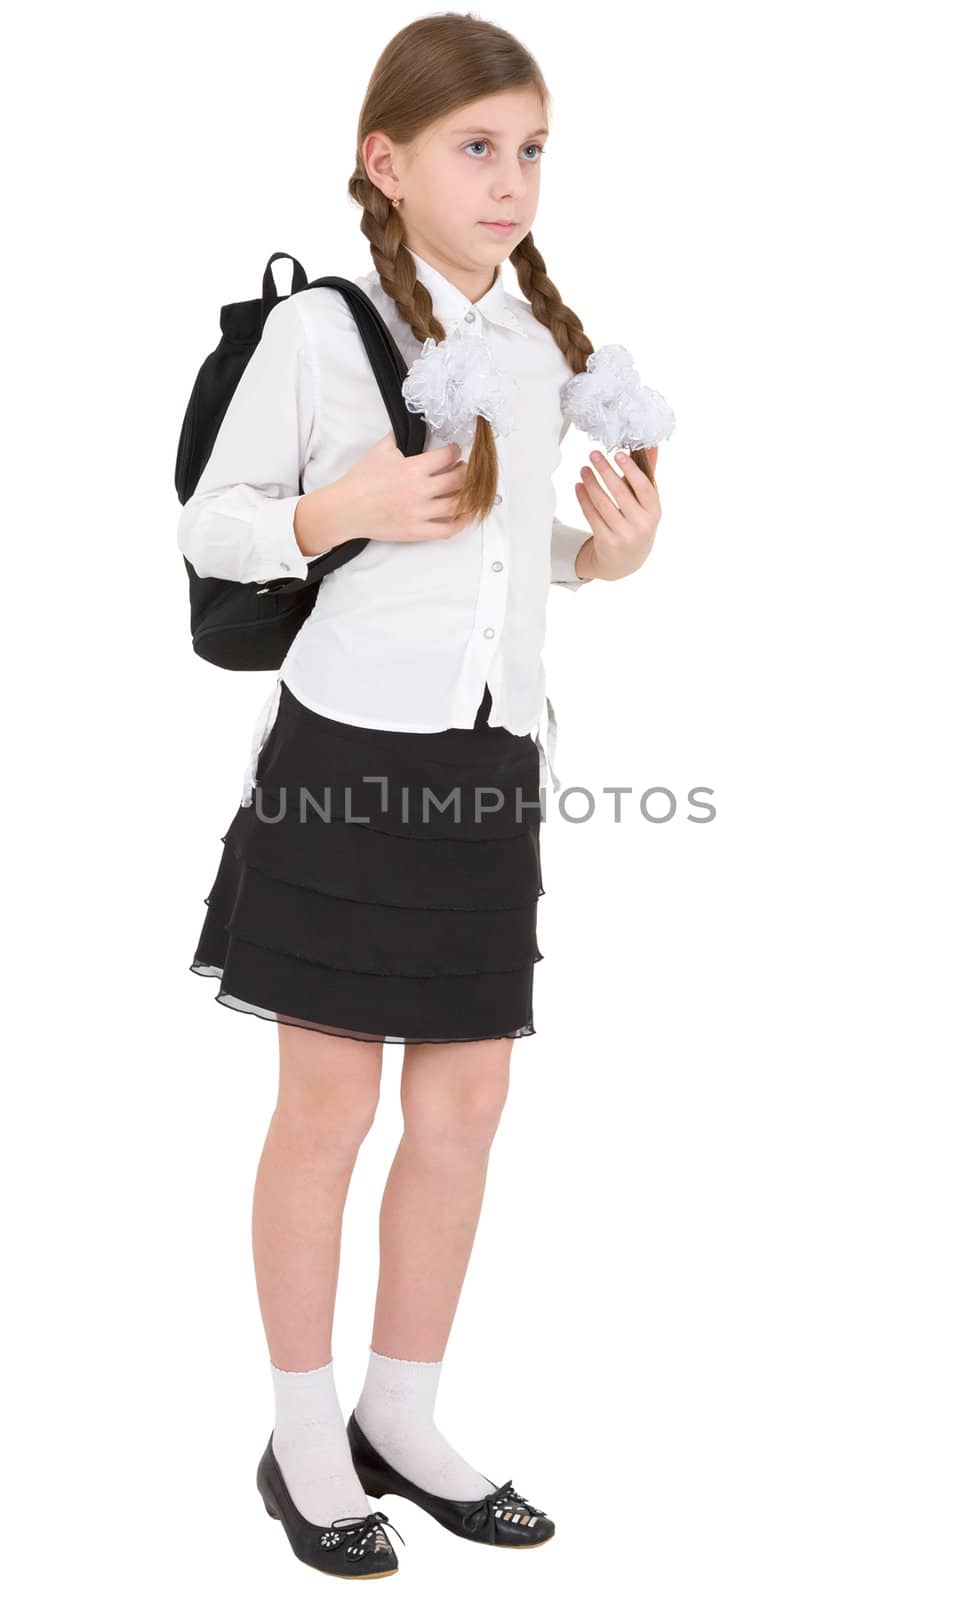 Schoolgirl with satchel by pzaxe